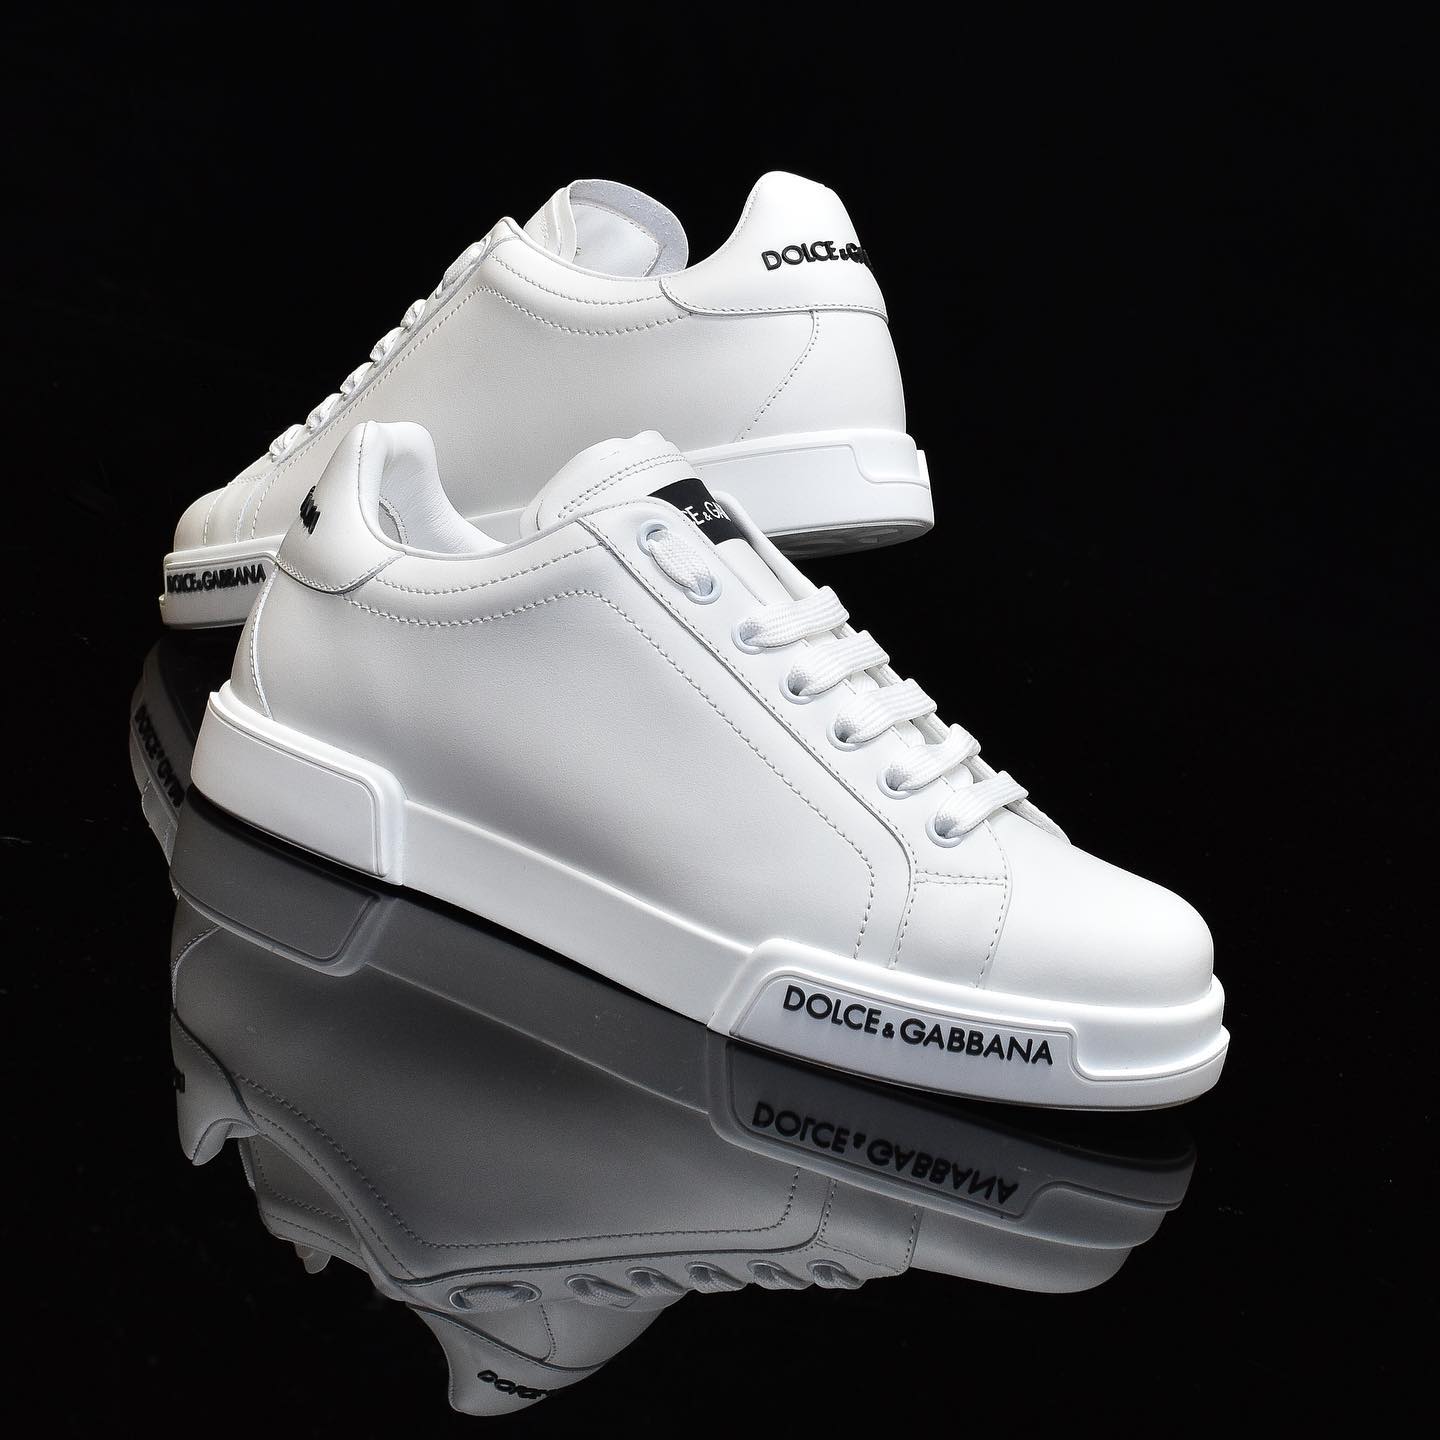 SNEAKER Dolce & Gabbana Portifino SneakersDFLGGKJGLJGL.jpg